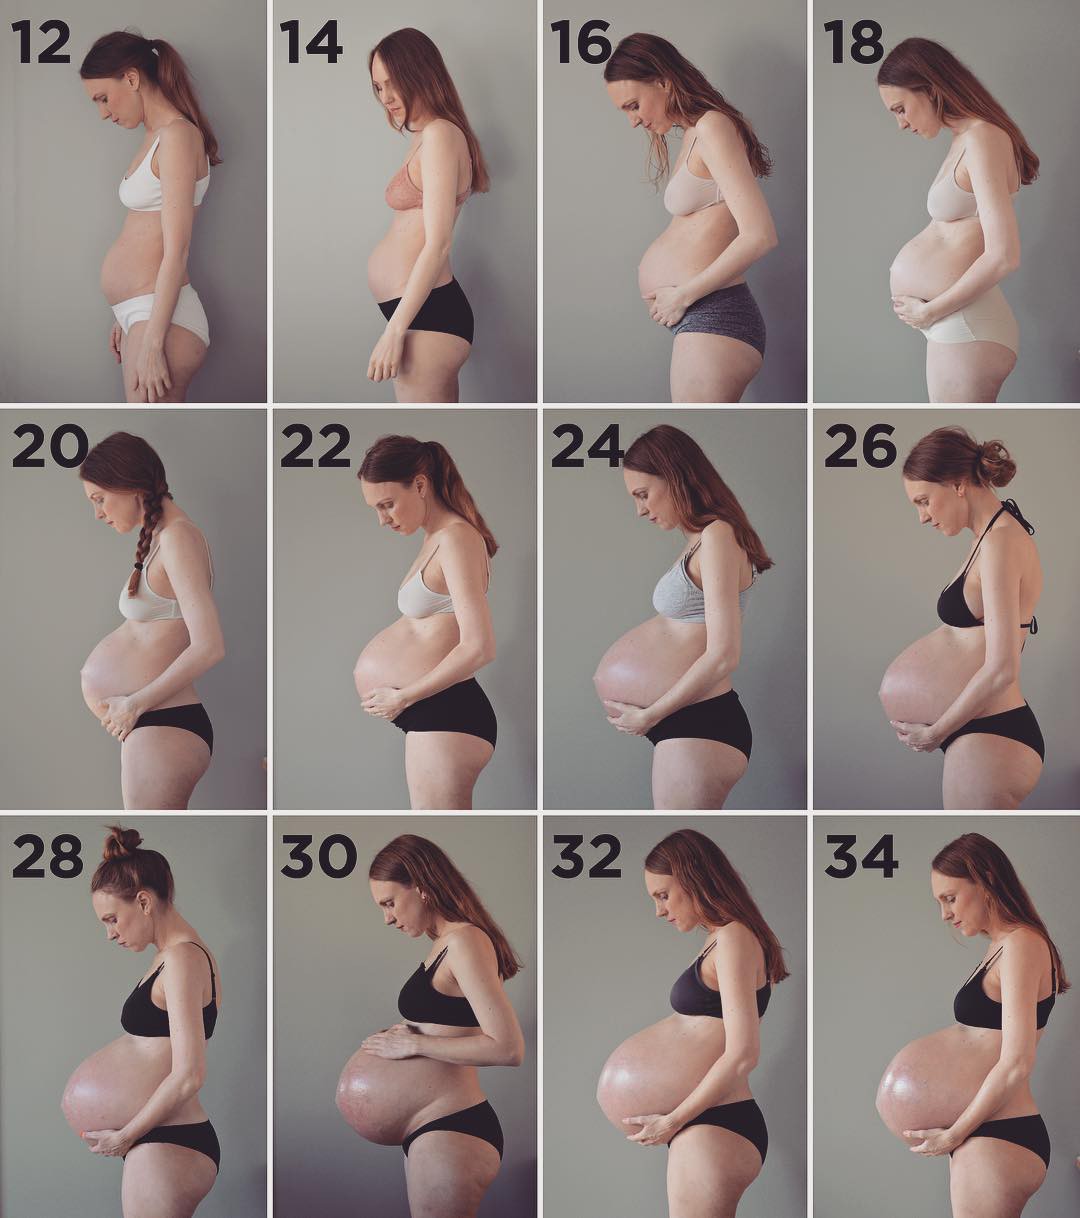 Bụng bầu dài và rớt xuống khiến nhiều người kinh ngạc và tò mò. Những hình ảnh thú vị này sẽ giúp các mẹ hiểu rõ hơn về quá trình phát triển của bé và những biến đổi đặc biệt của cơ thể mẹ.